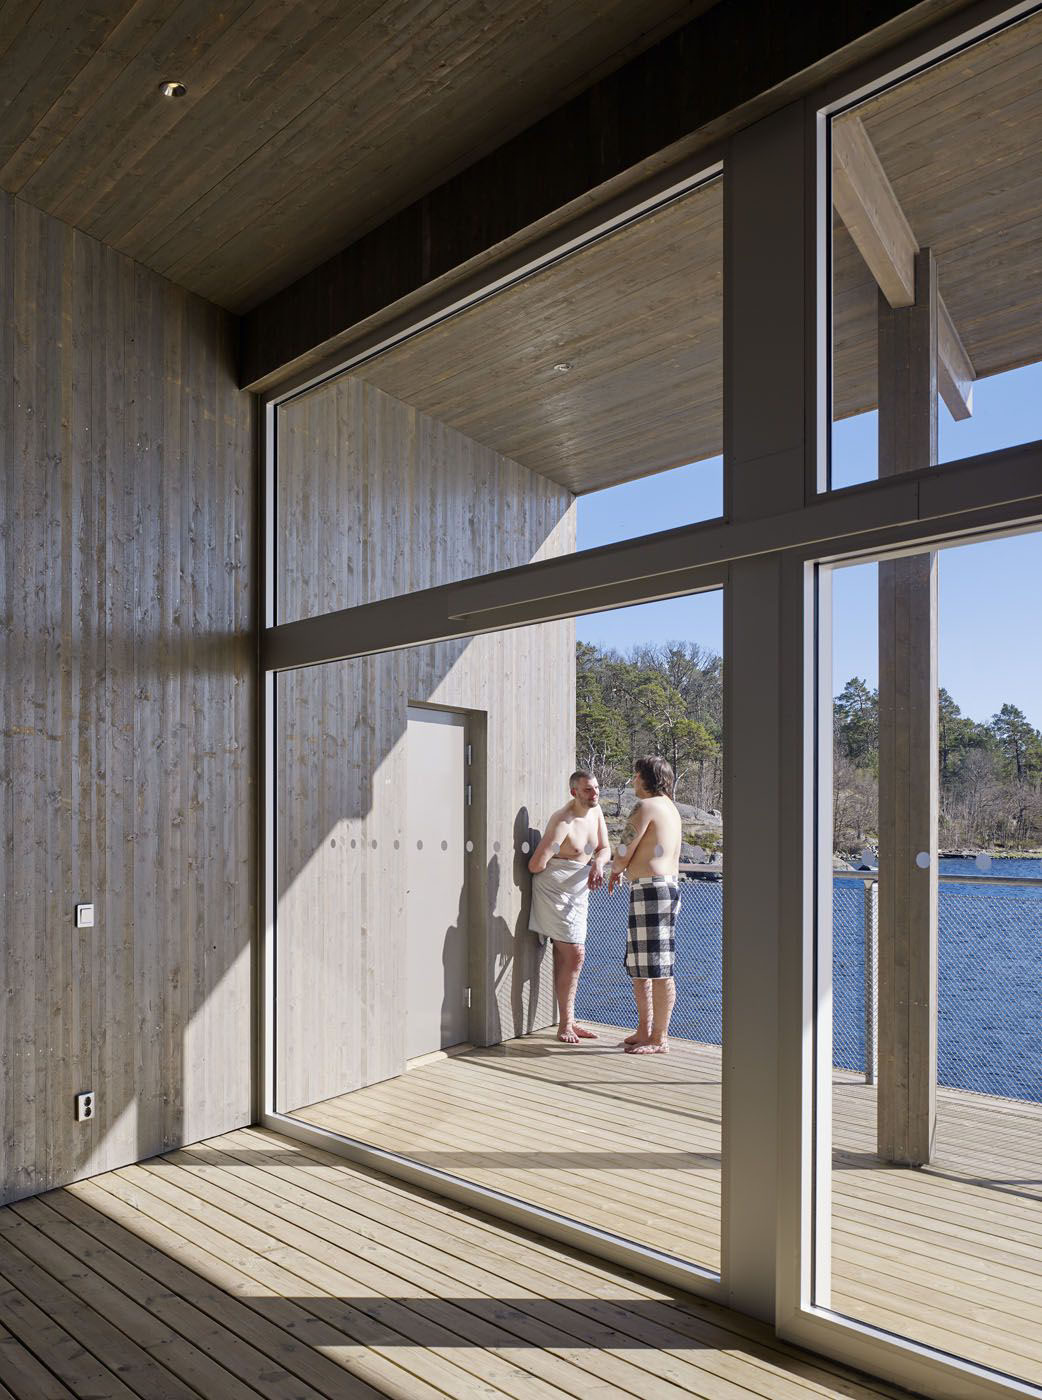 http://www.theinteriordirectory.com/white-arkitekter-creates-swedish-heritage-bath-house-modern-twist